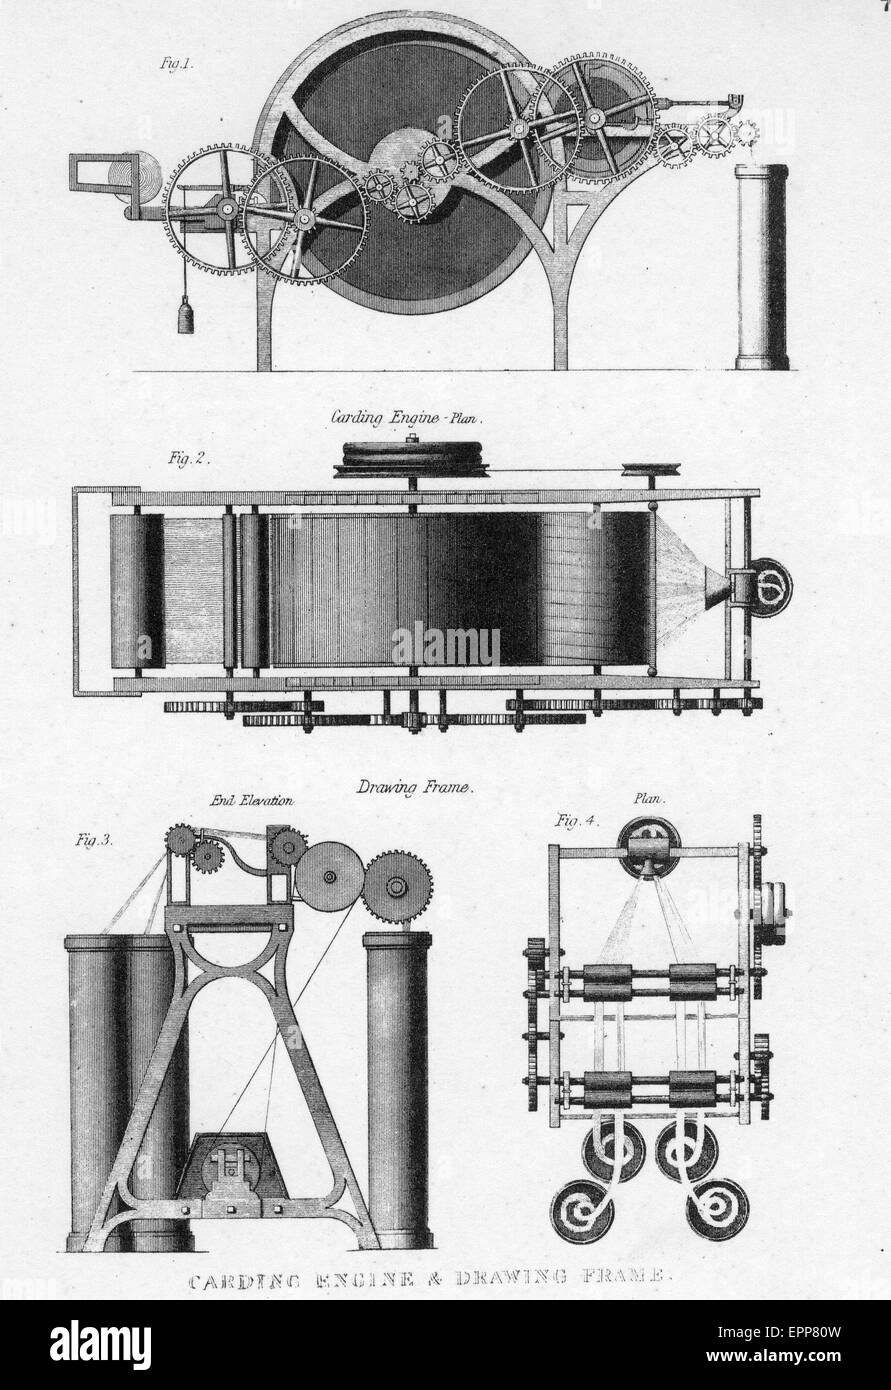 Macchina per cardare da Baines" la storia della lavorazione del cotone pubblicato in 1835. Una delle diverse macchine di cardatura progettato nei primi anni del XIX secolo. Foto Stock